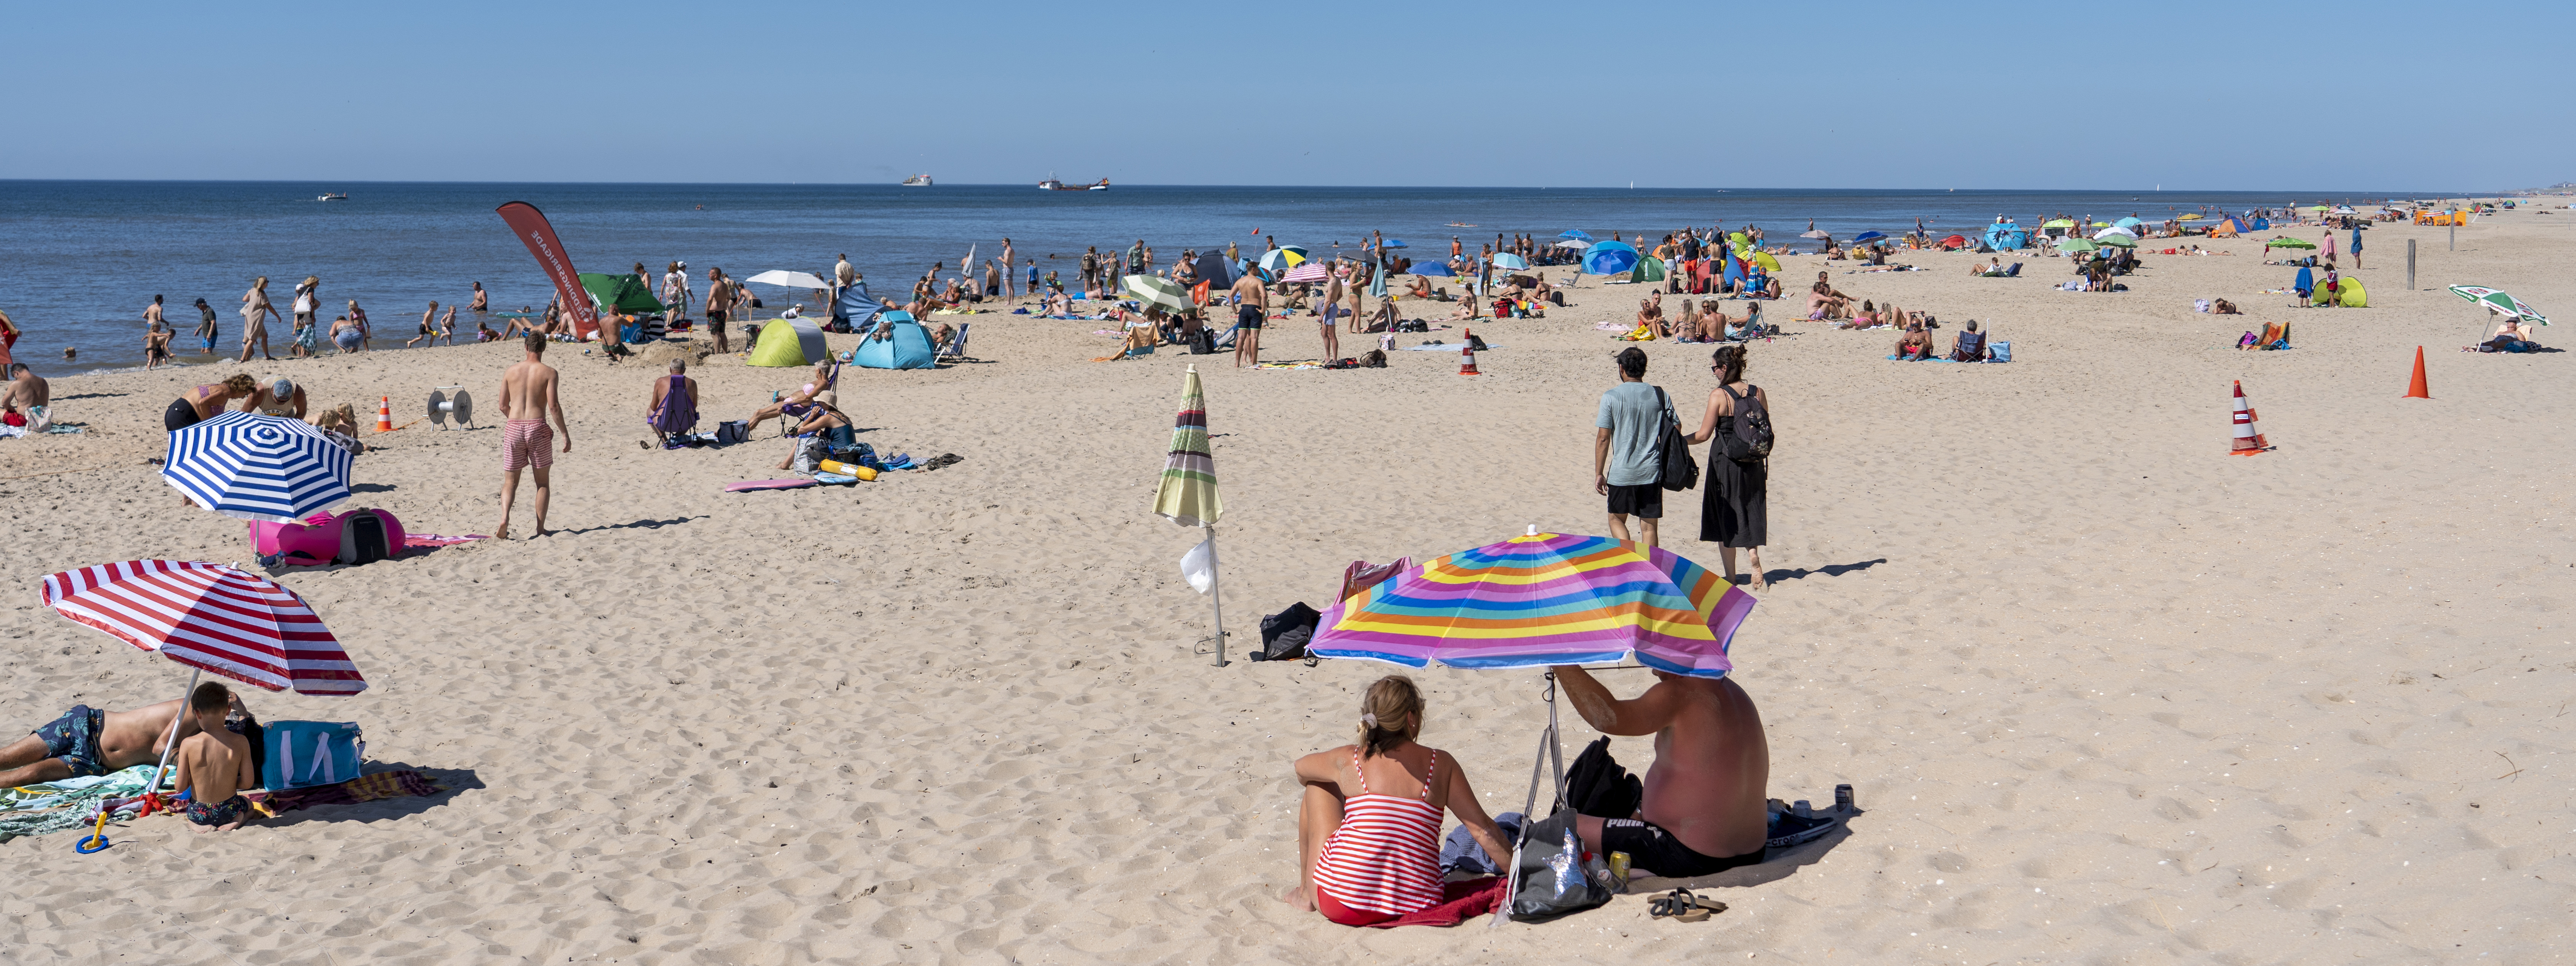 Mensen in zomerkleding onder een parasol op het zandstrand.